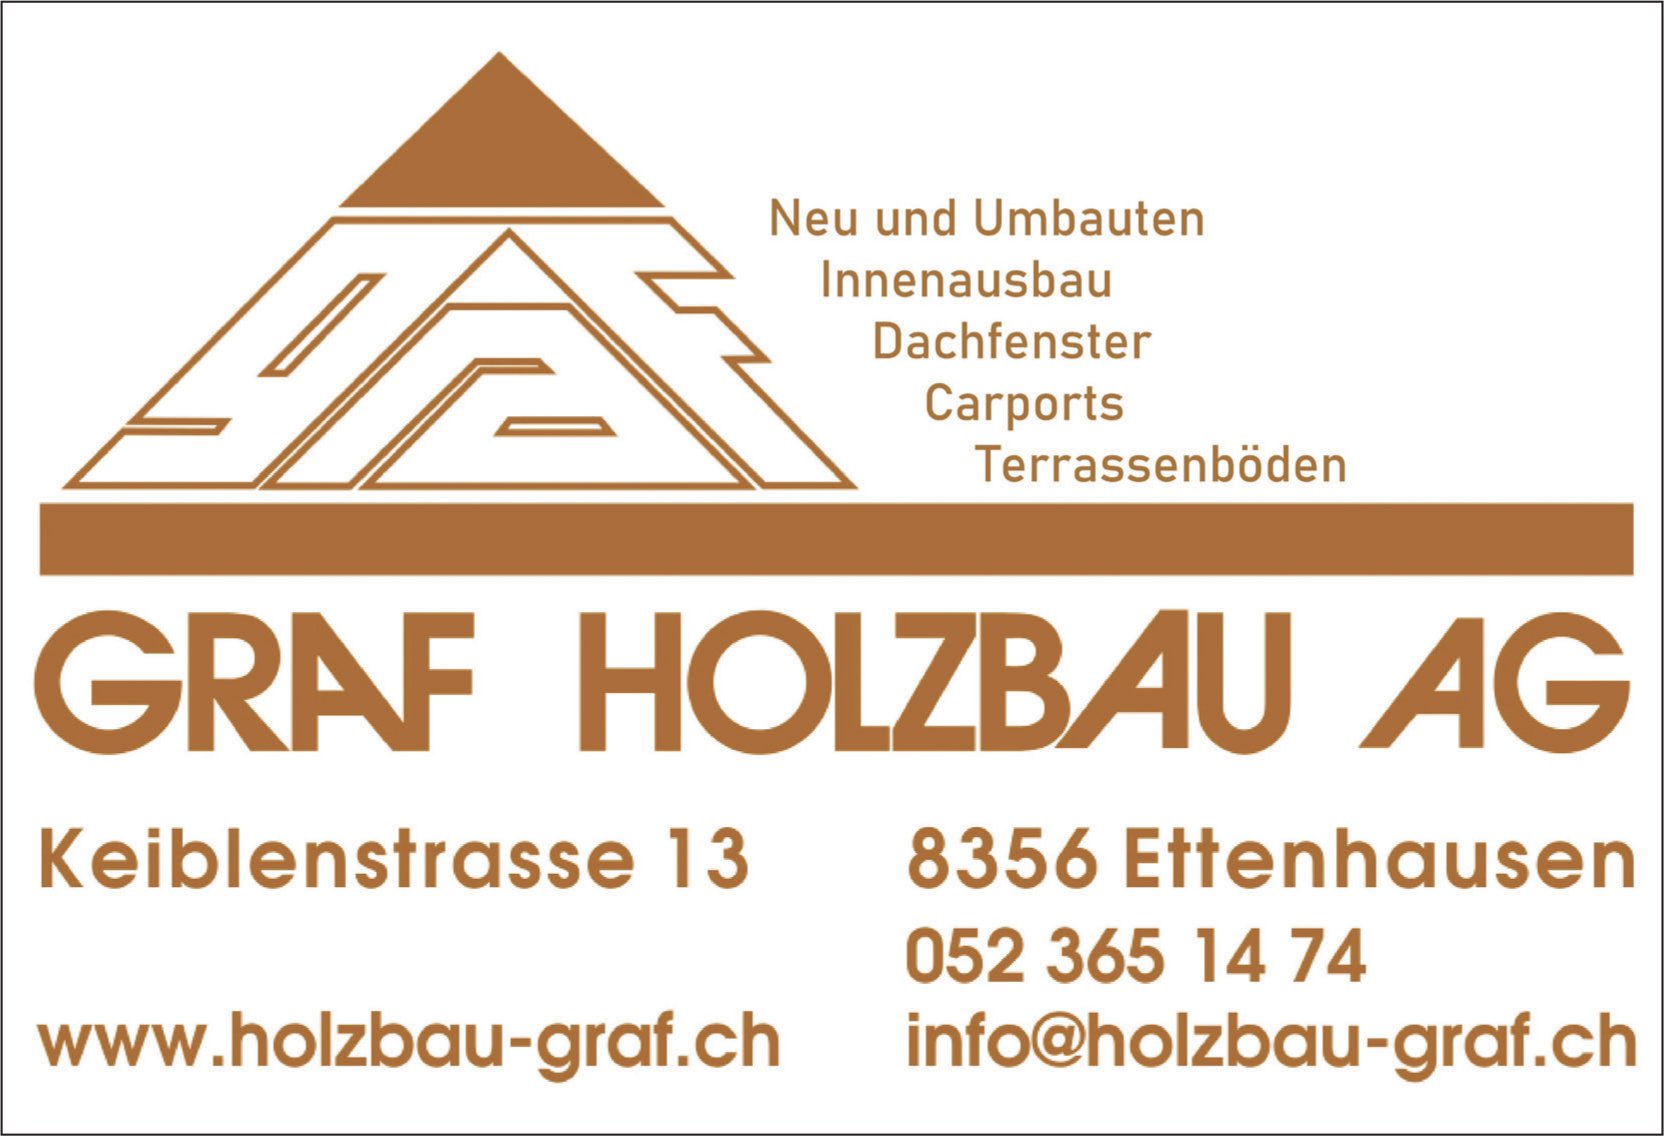 Graf Holzbau AG, Ettenhausen - Neu und Umbauten, Innenausbau,  Dachfenster, Carports